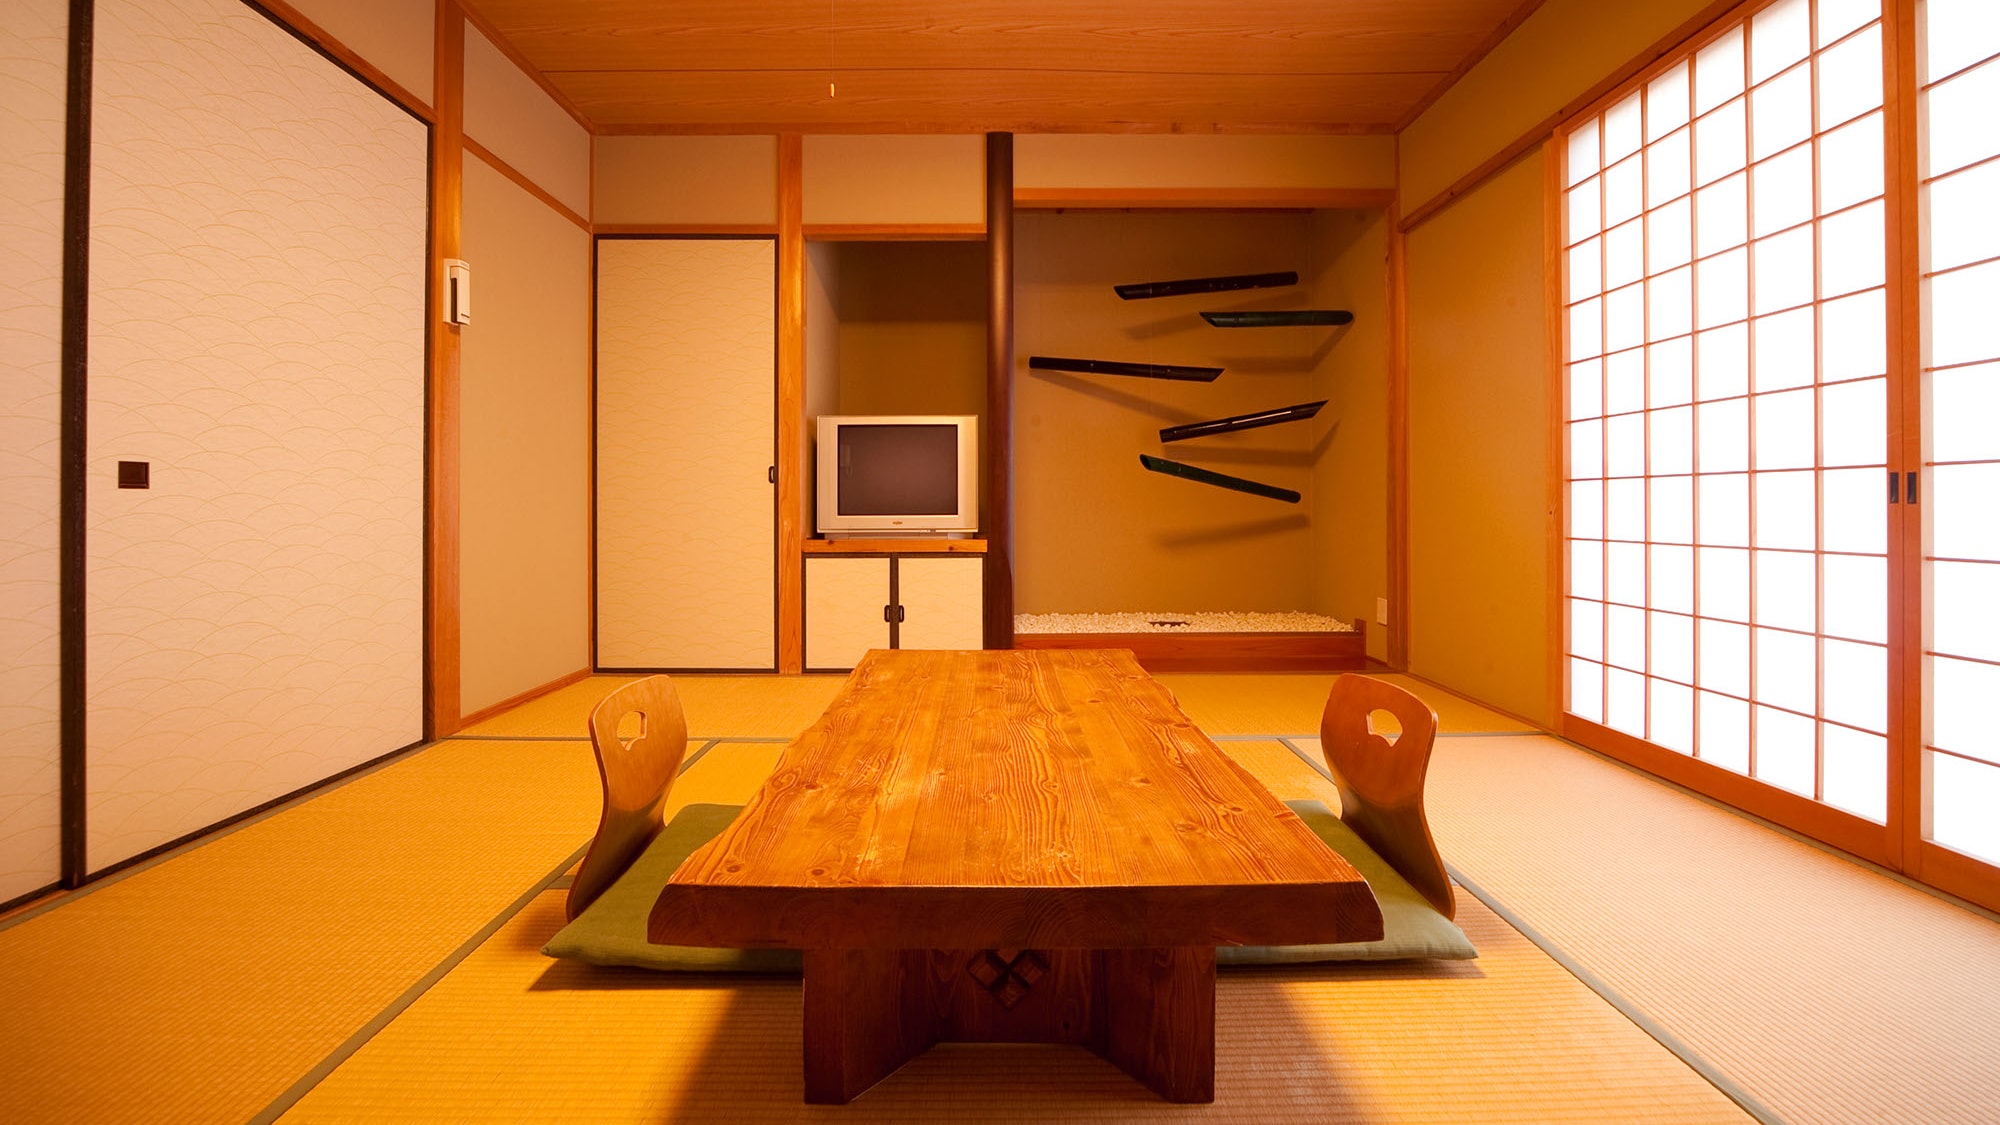 일본식 객실 내 욕실이있는 객실